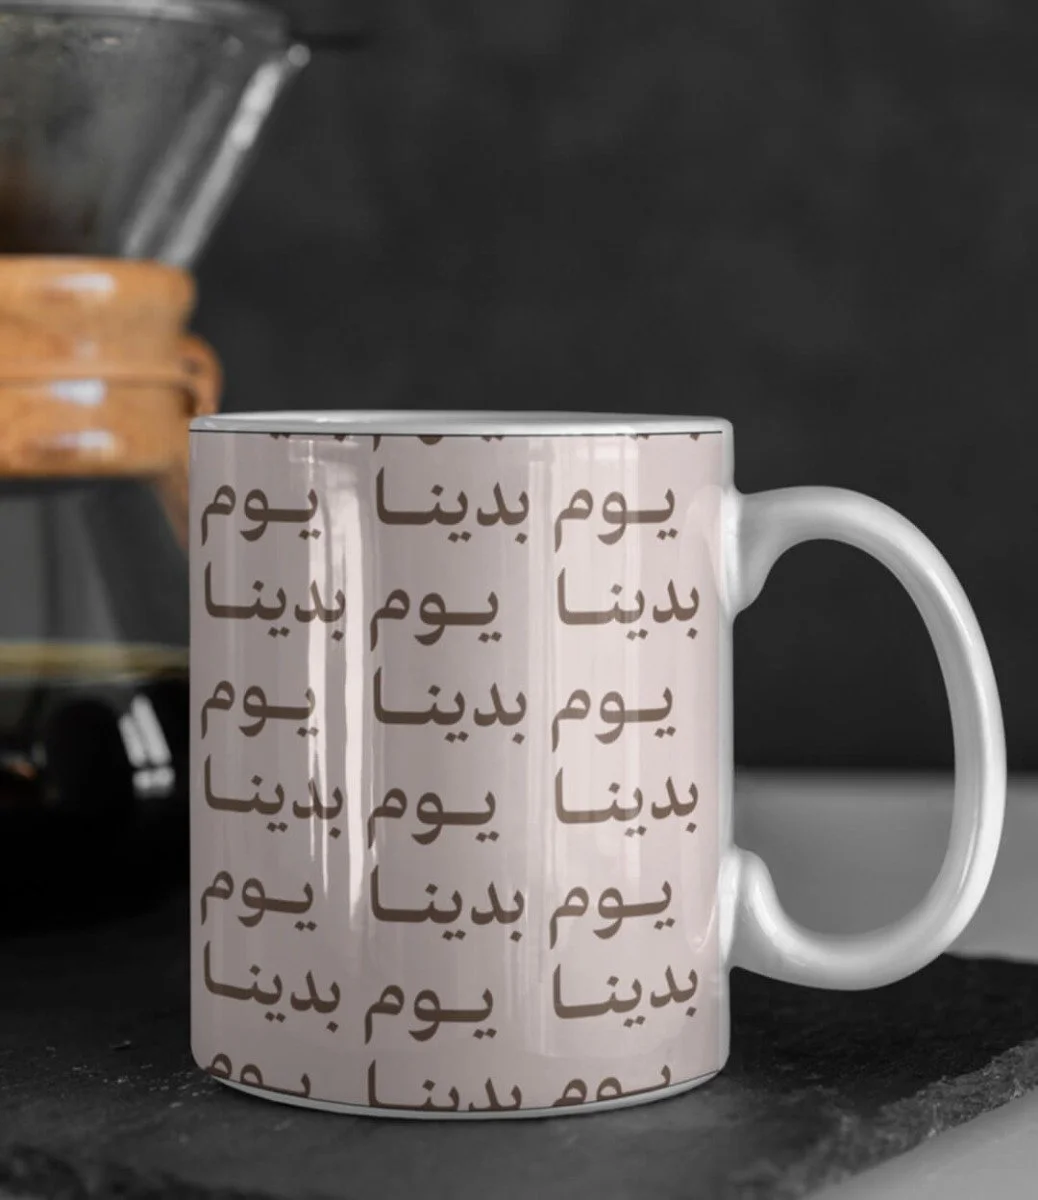 Founding Day "Youm Badena" Customized Mug 